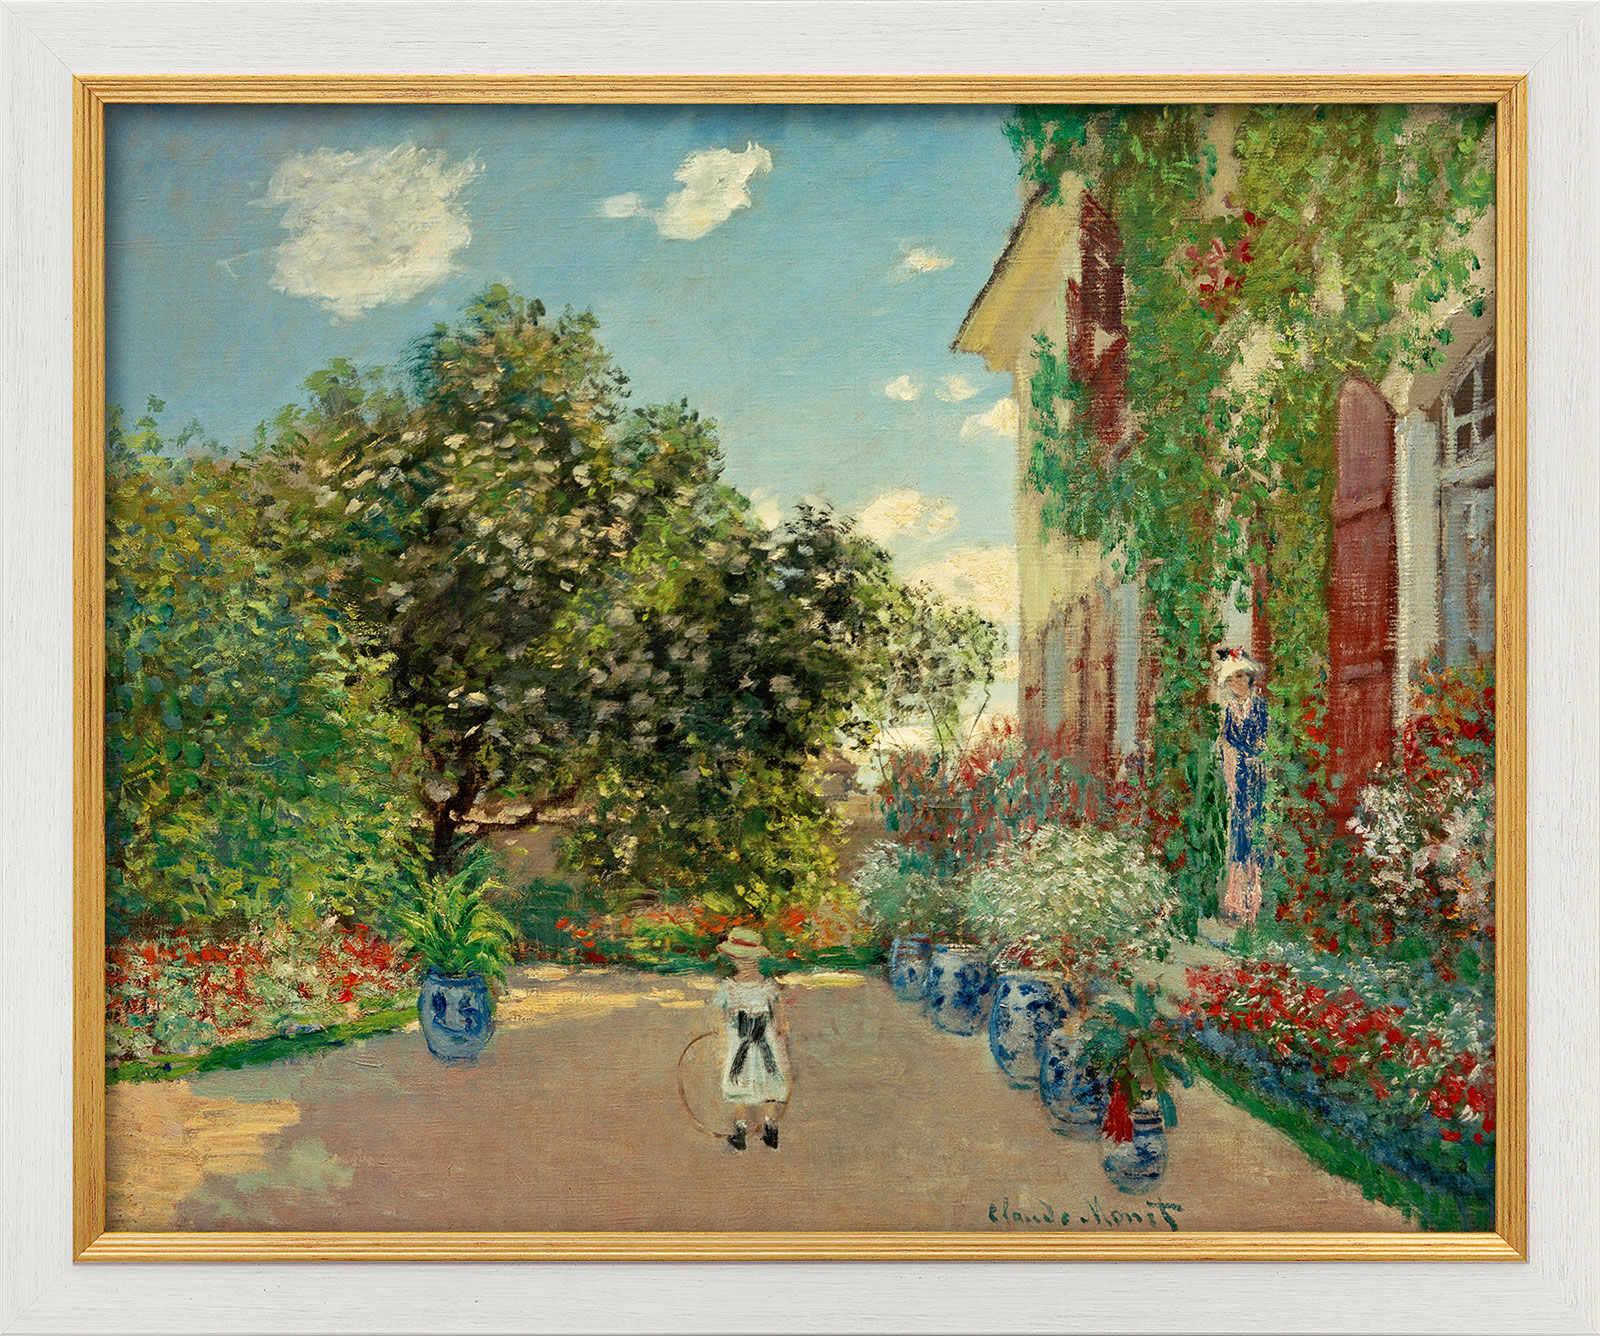 Picture "La maison de l'artiste à Argenteuil (The Artist's House in Argenteuil)" (1873), framed by Claude Monet